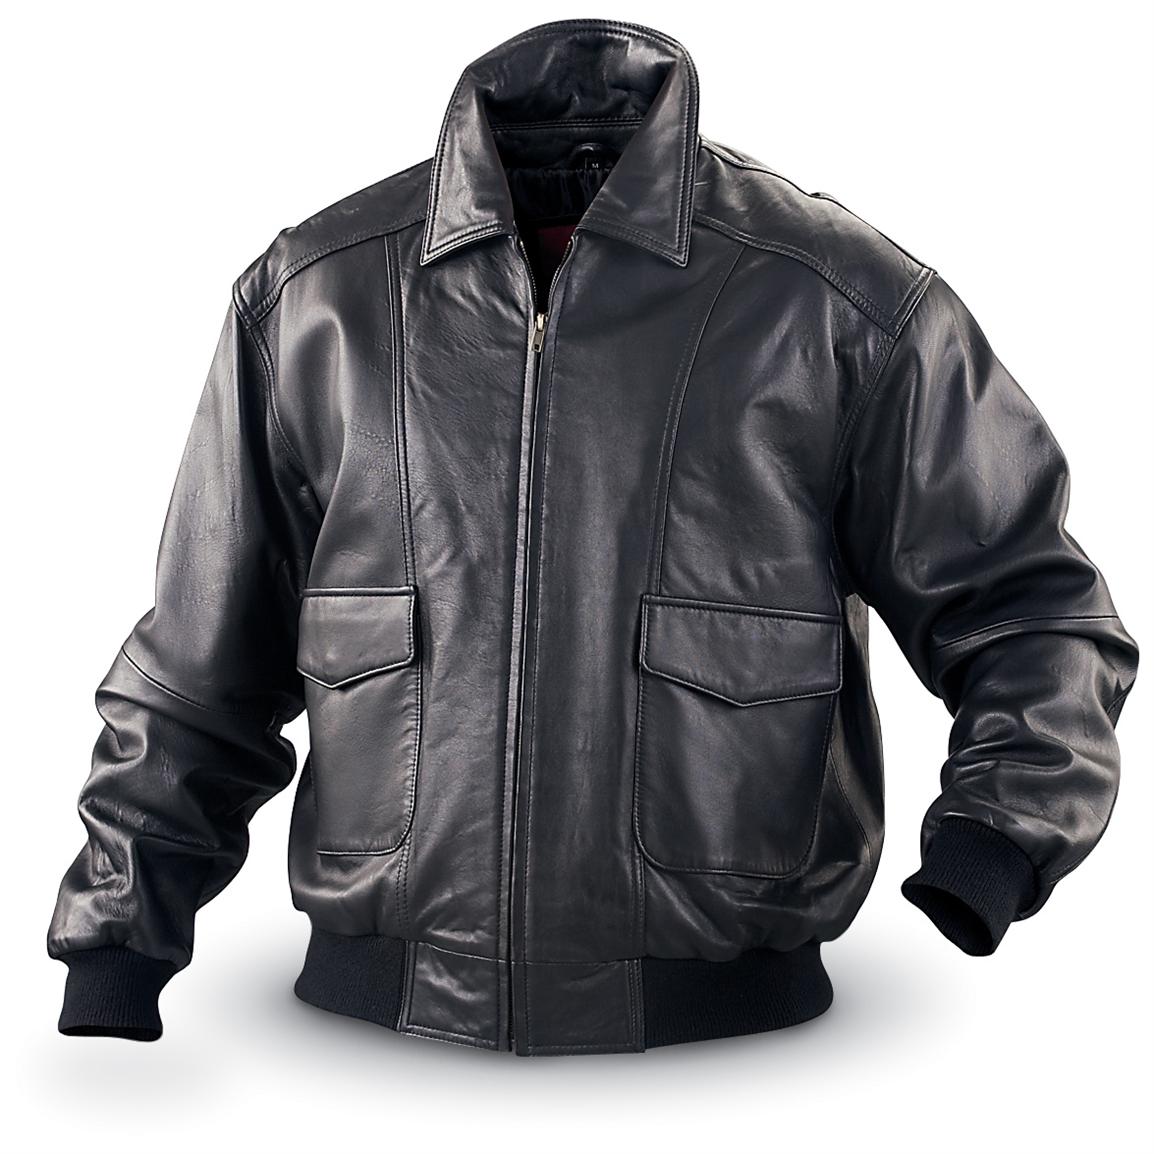 Mens Leather Vests For Sale Nz | NAR Media Kit